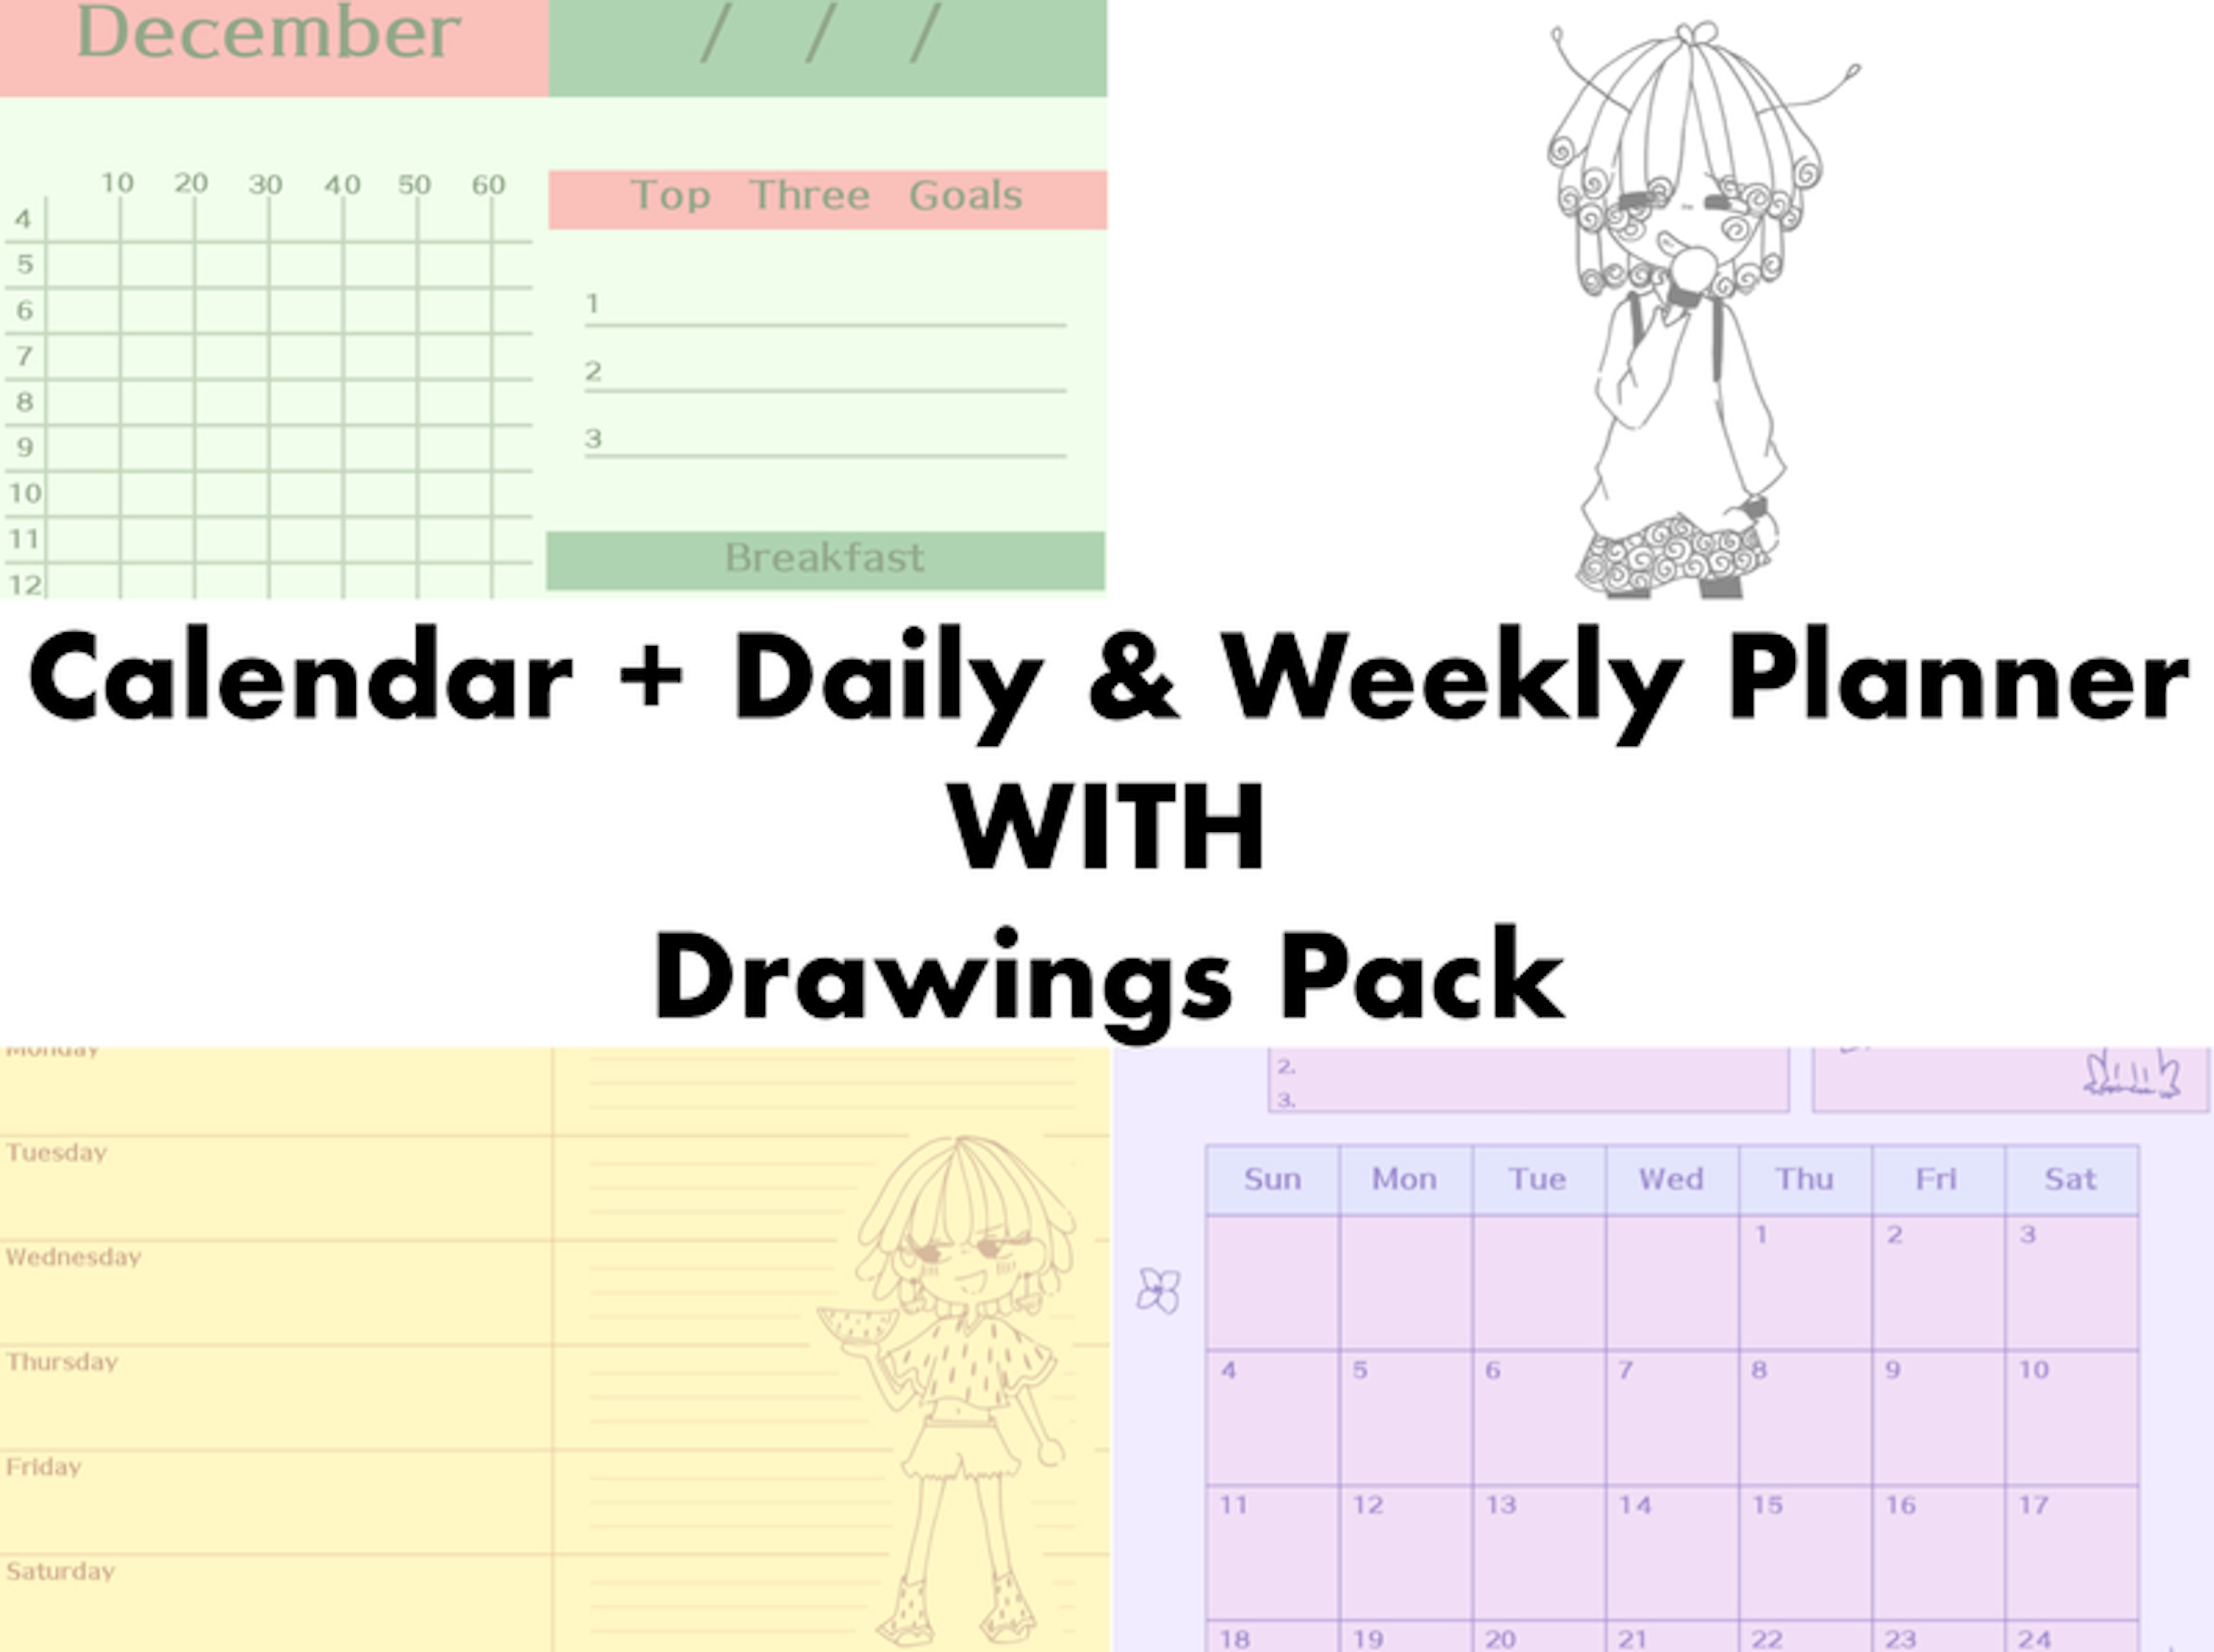 Calendar, Daily, Weekly + Drawings Pack